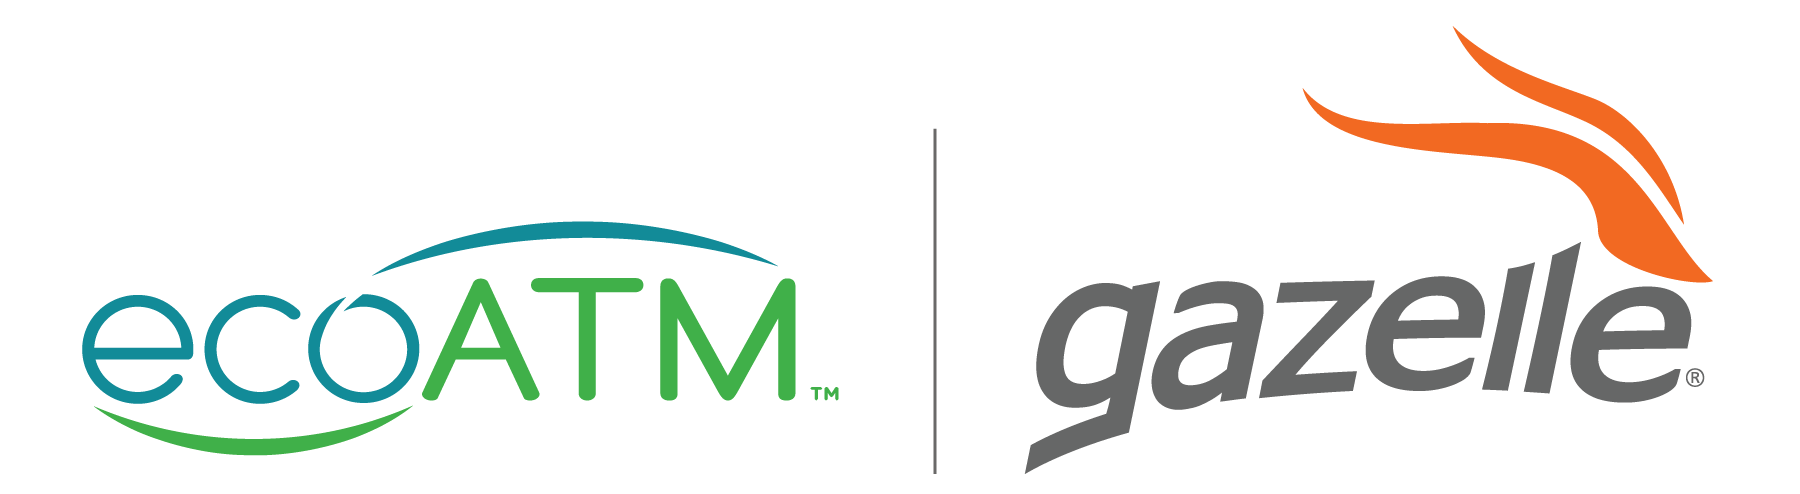 ecoATM | gazelle logo